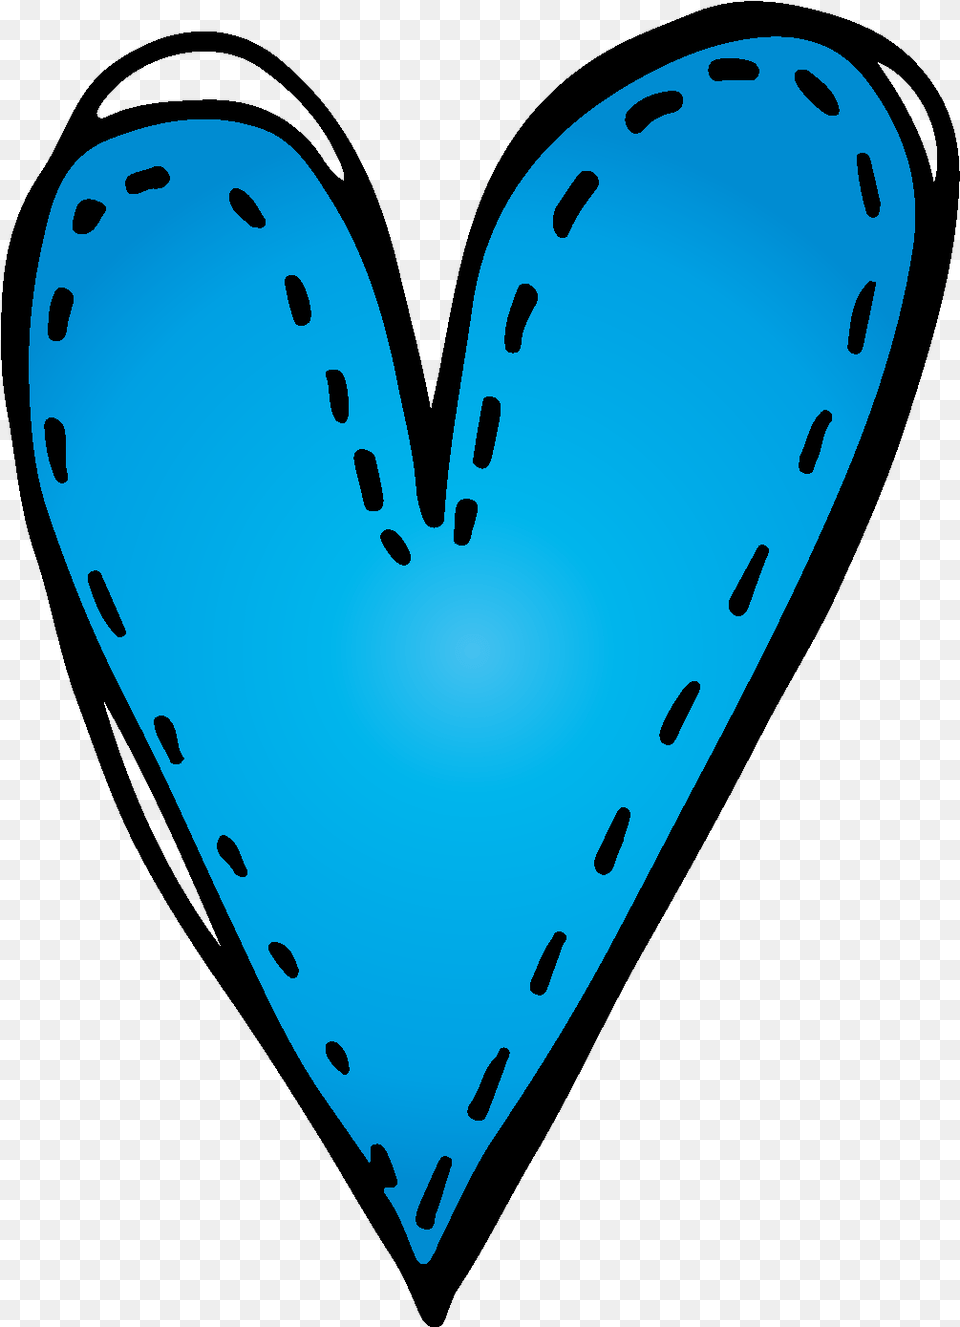 Grades Clipart Heart Melonheadz Heart Melonheadz Heart Clipart, Turquoise Png Image